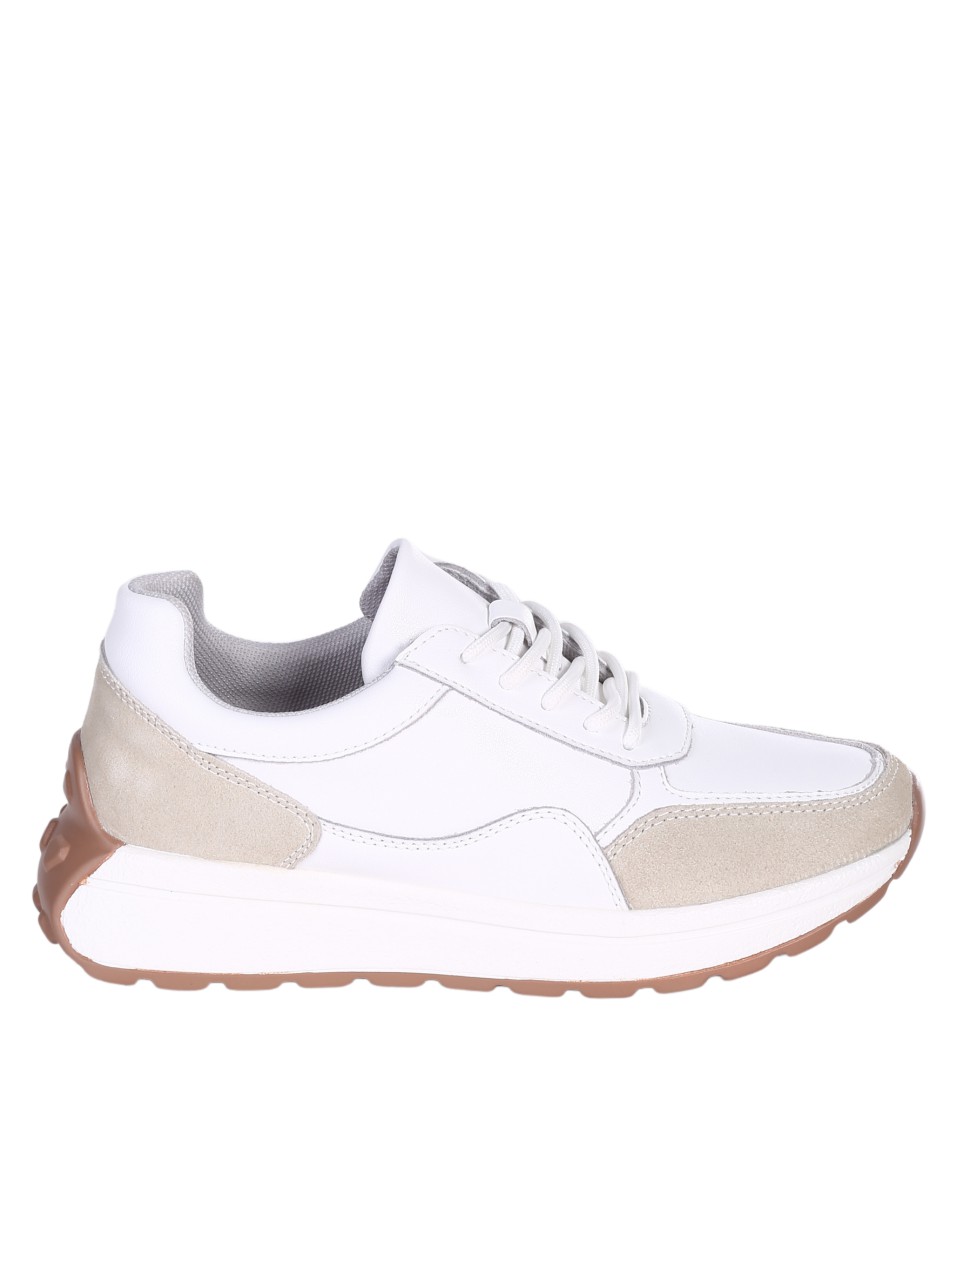 Ежедневни дамски обувки от естествена кожа и велур в бял/бежов цвят 3AF-24058 white/beige